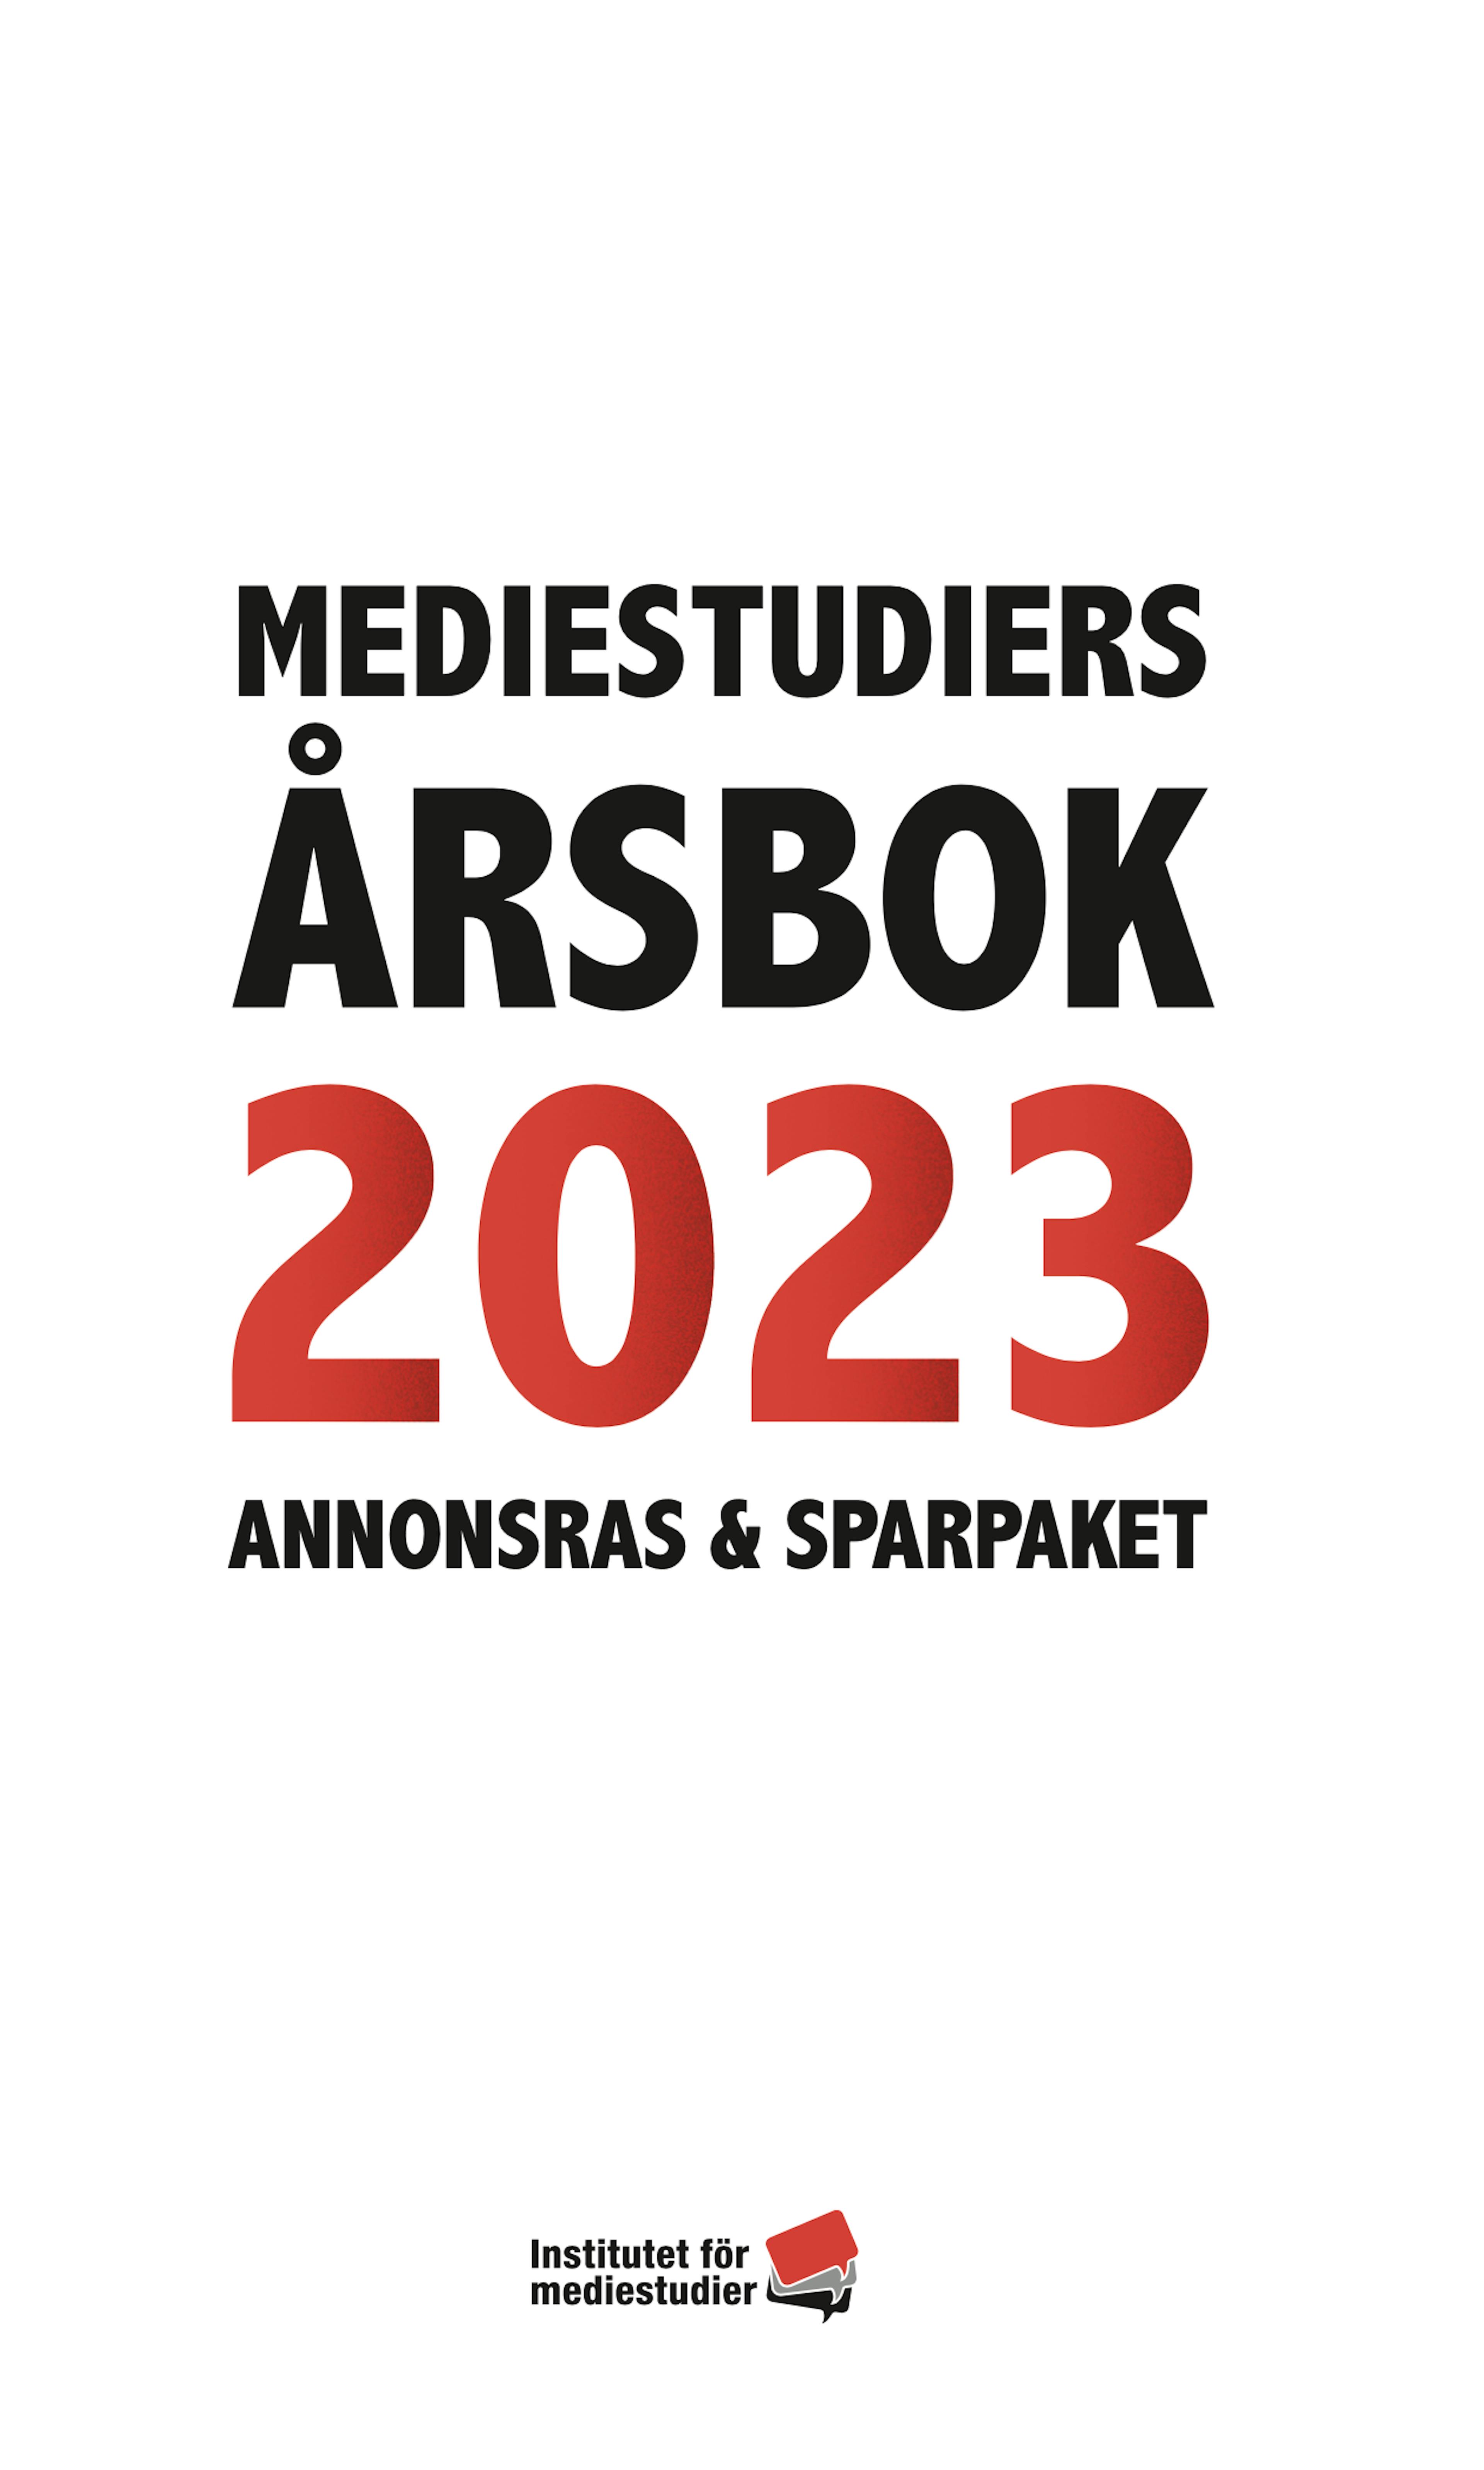 Report: Mediestudiers årsbok 2023 cover image